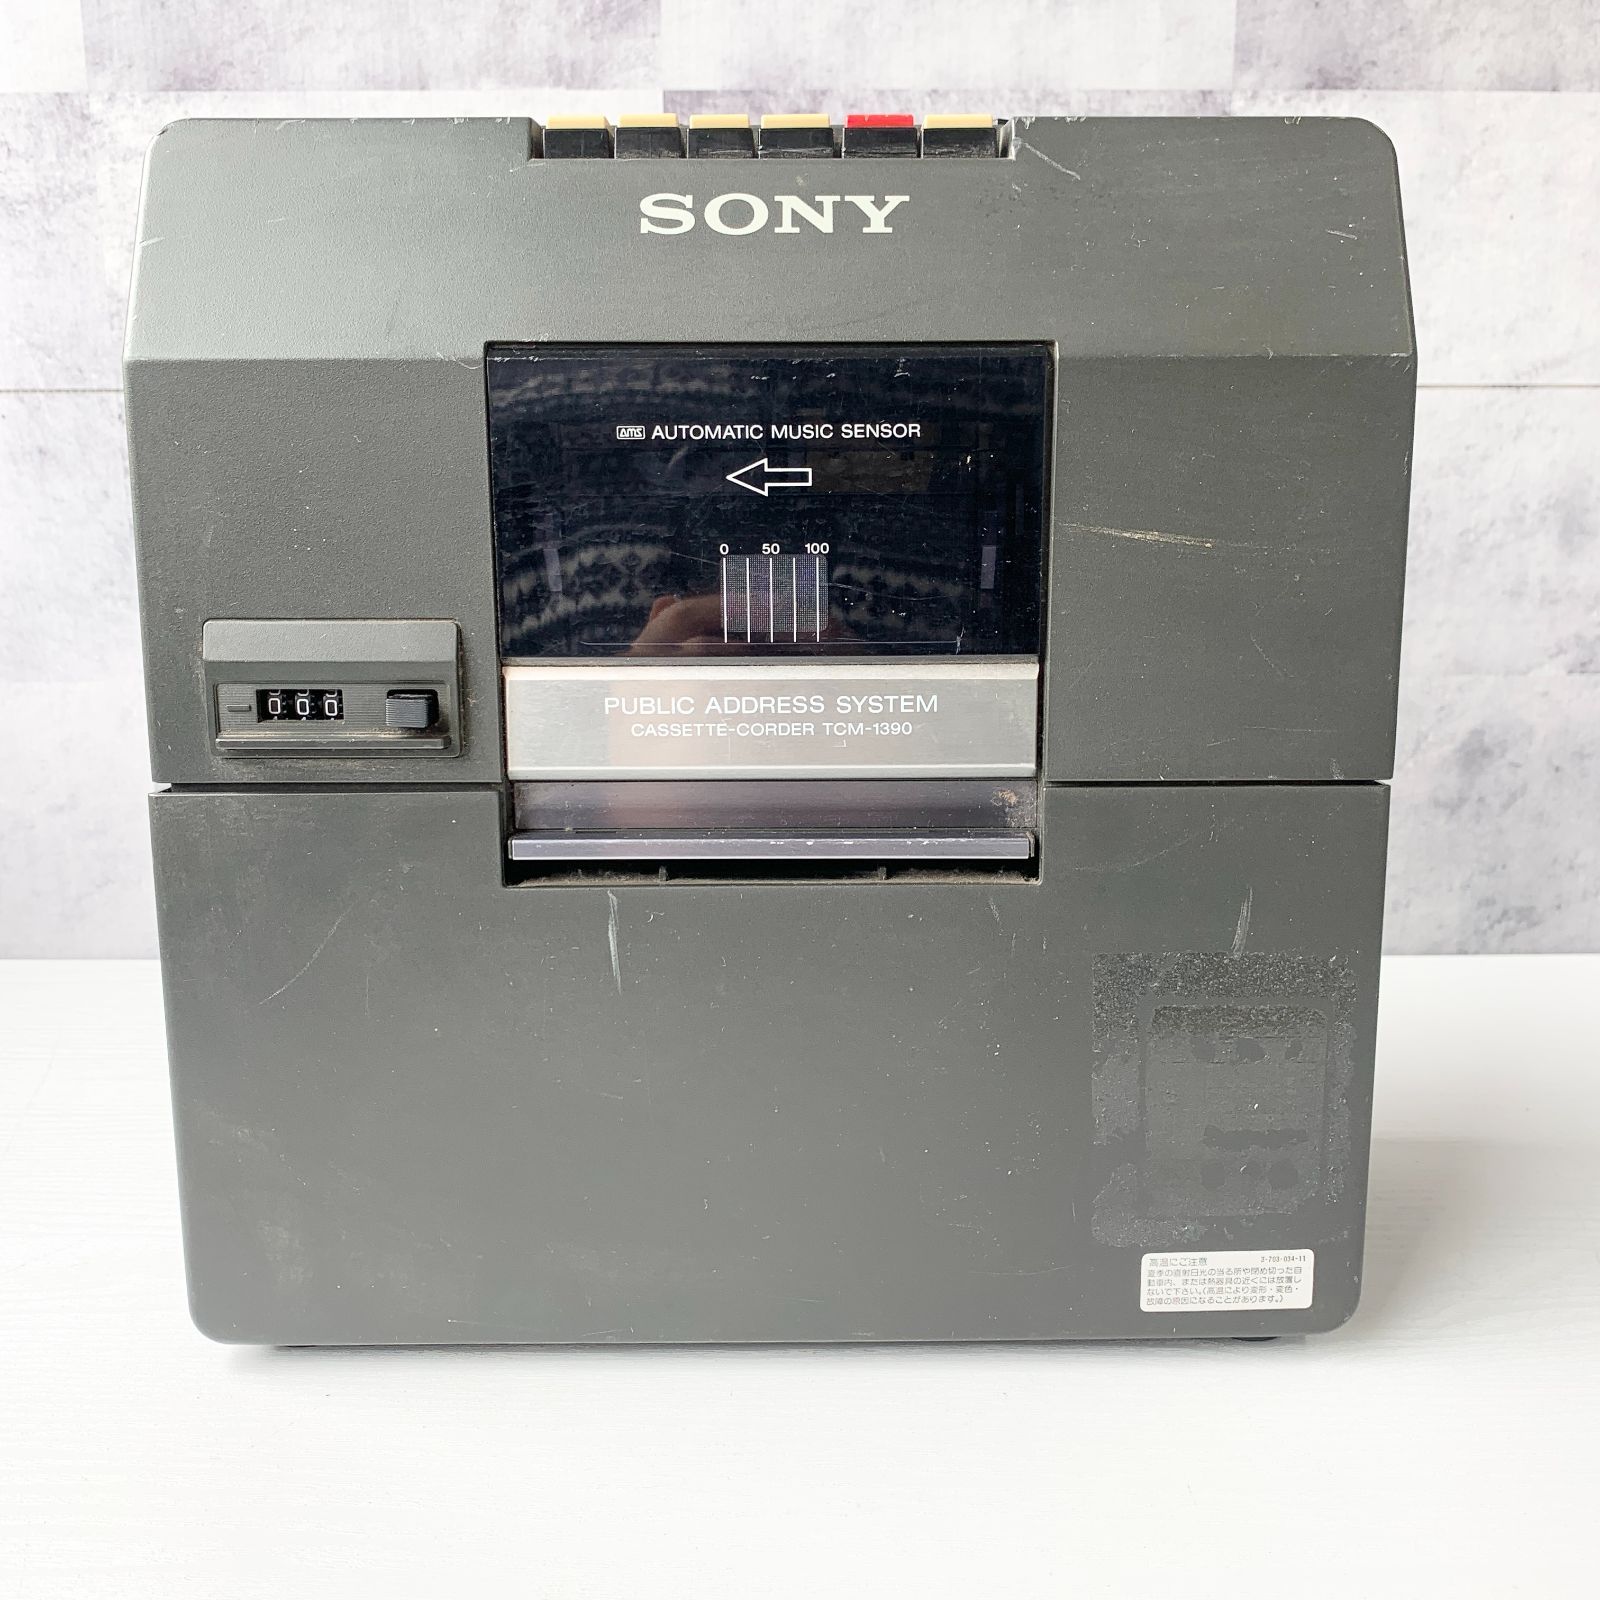 ソニー SONY TCM-1390 カセットテープレコーダー モノラル 業務用 拡声 